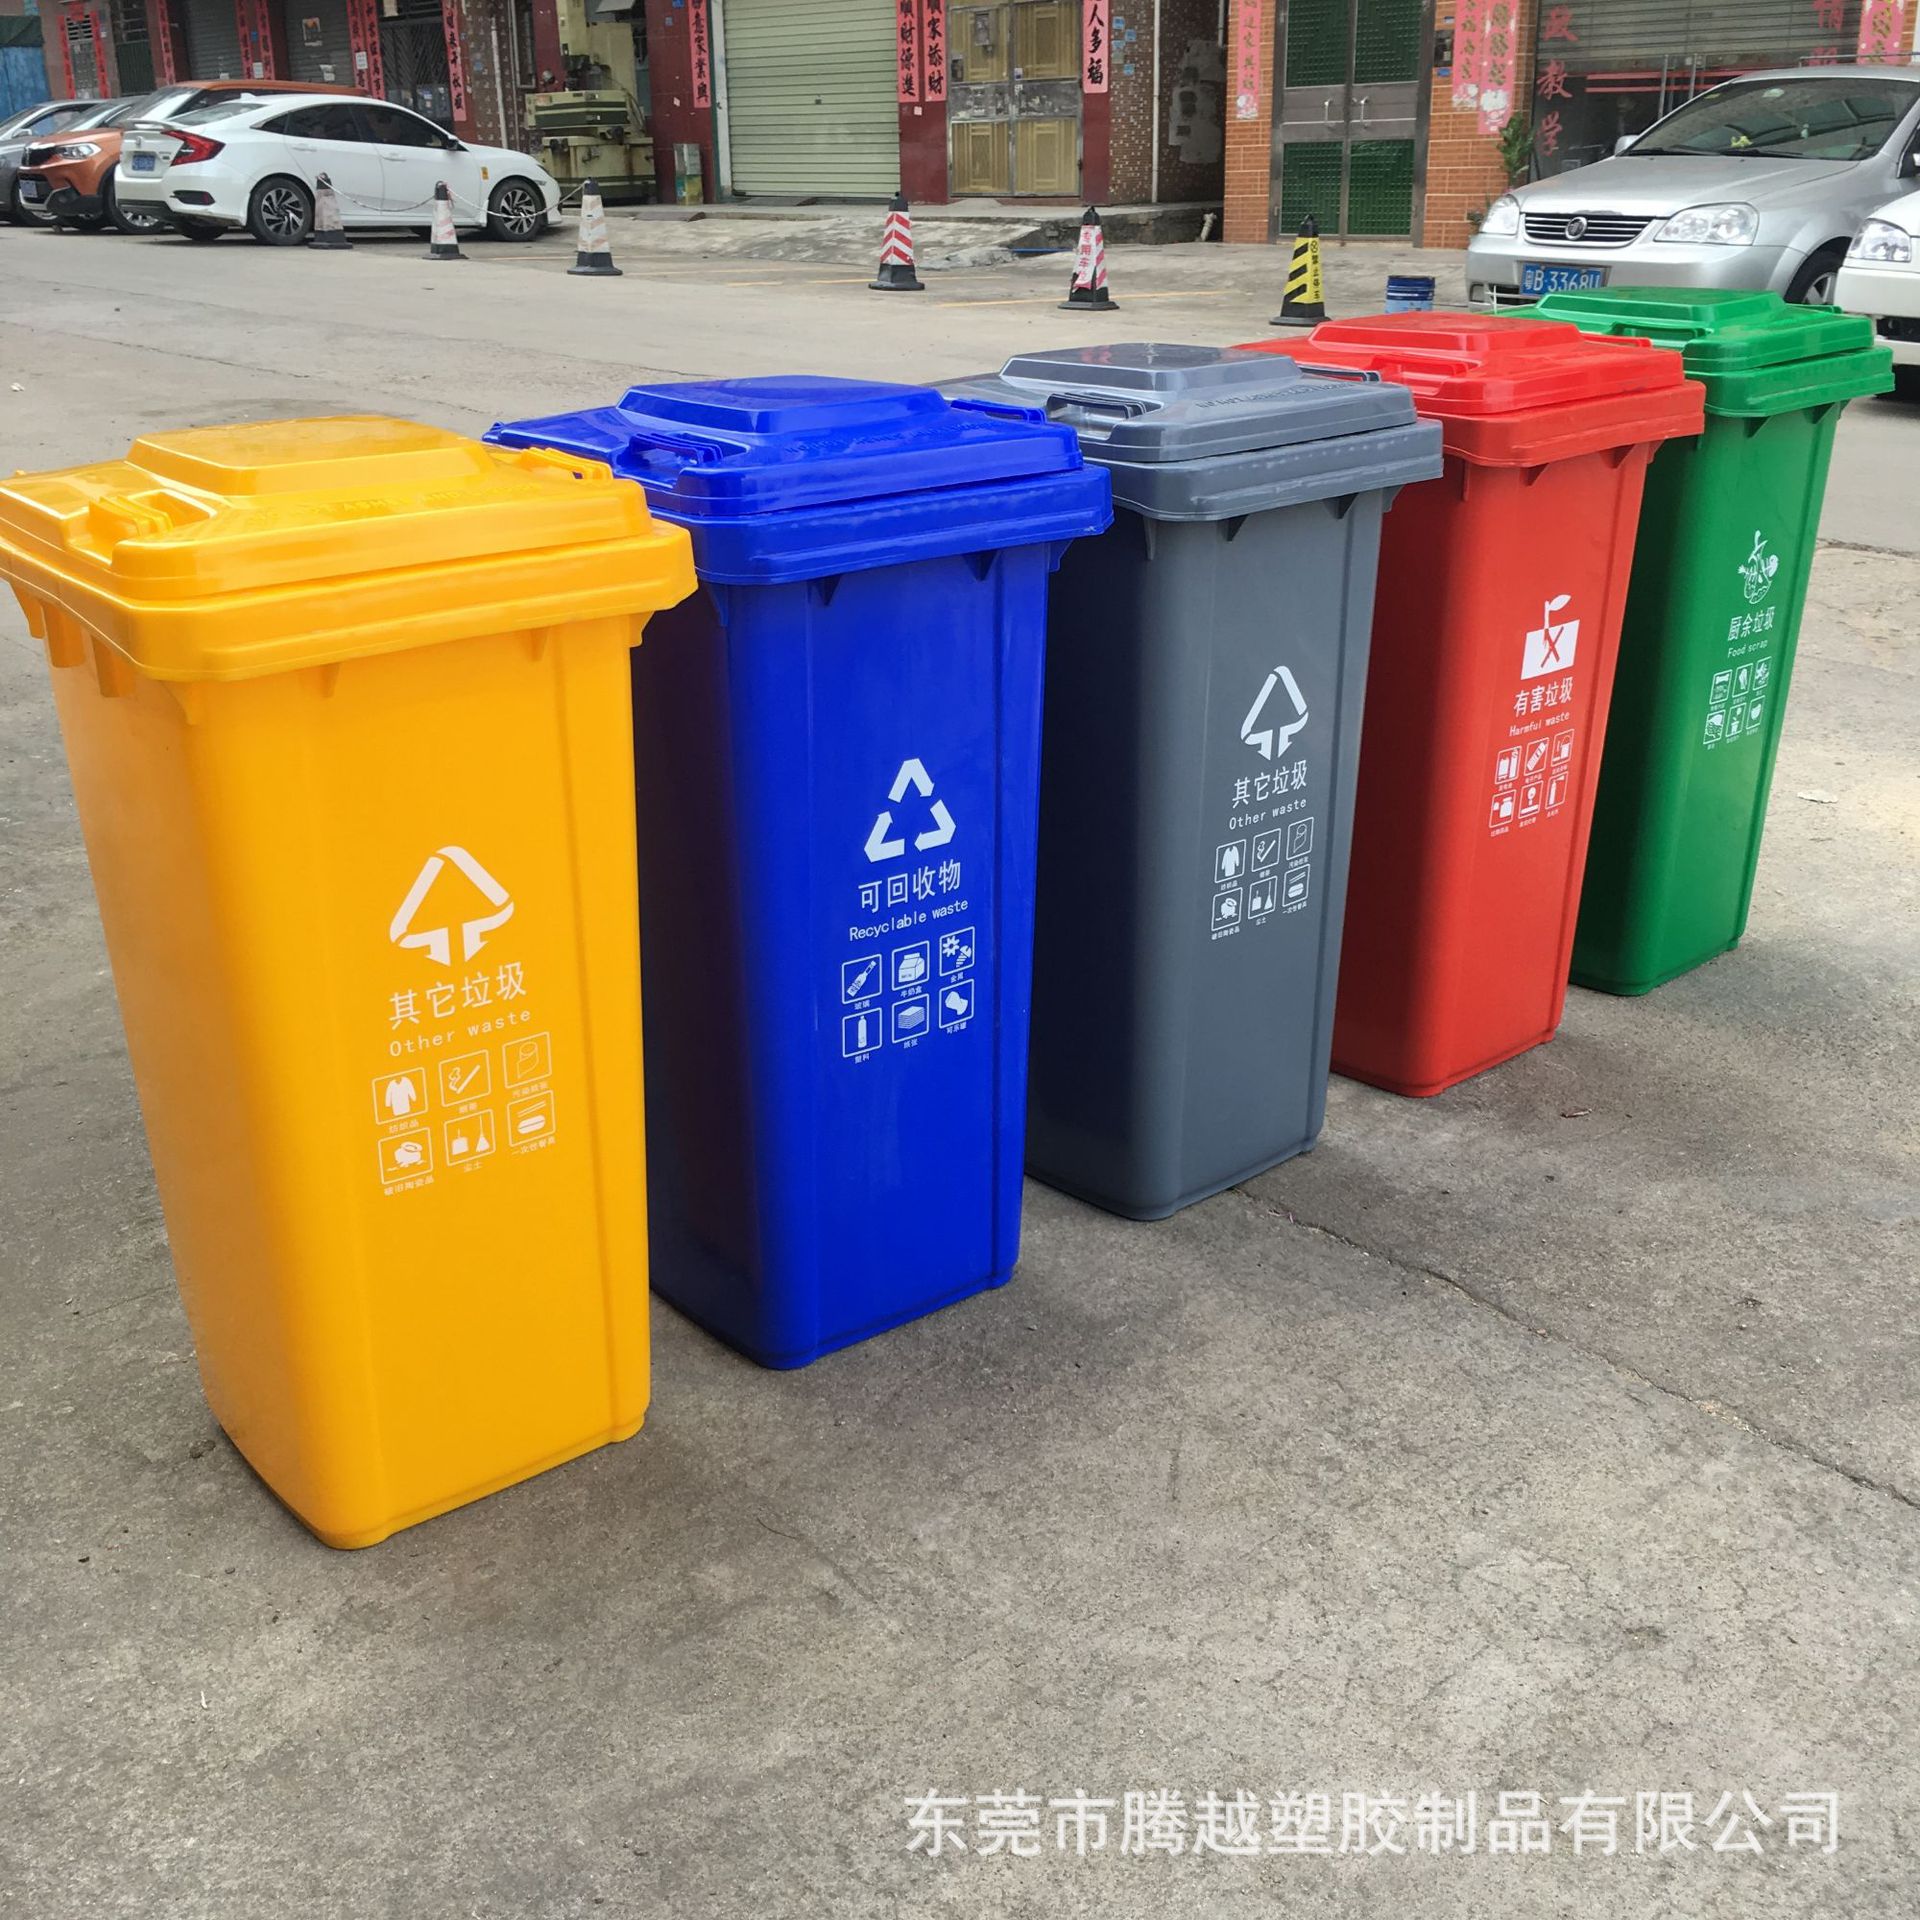 回收的纸如何生产再利用_回收纸再利用_纸的回收利用